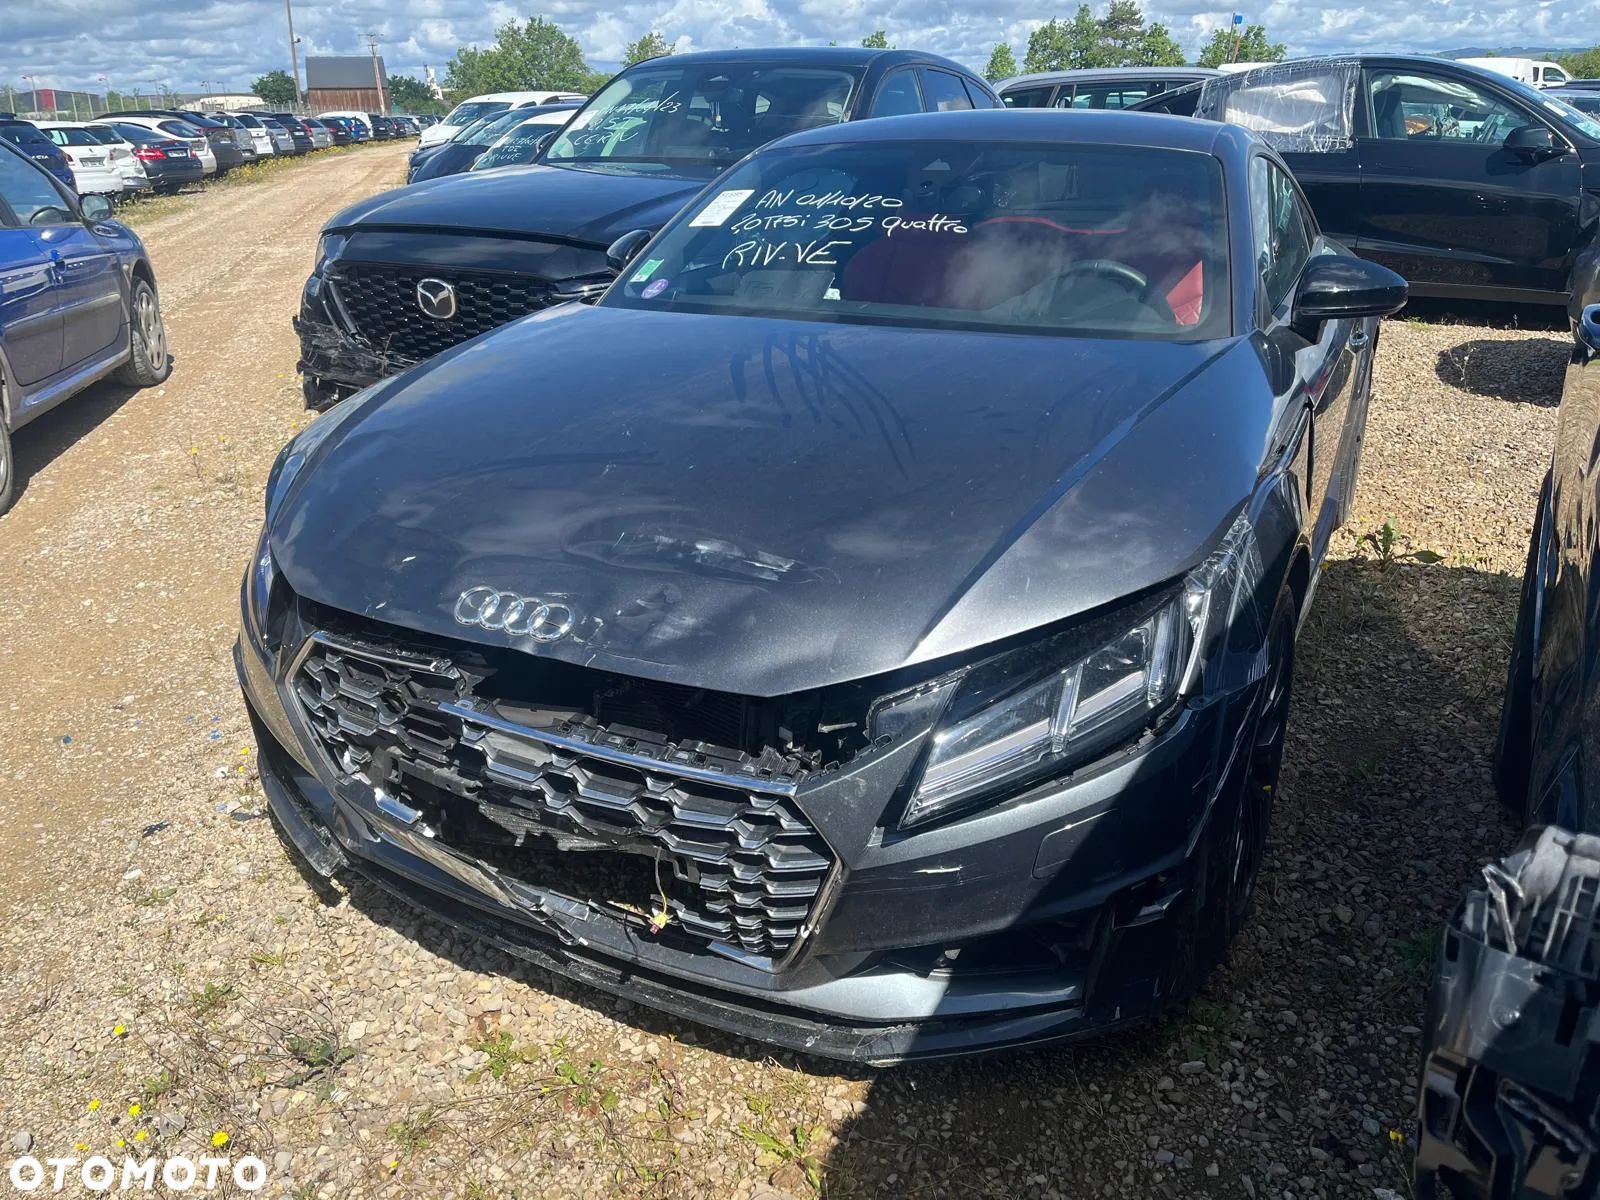 Audi TT - 1